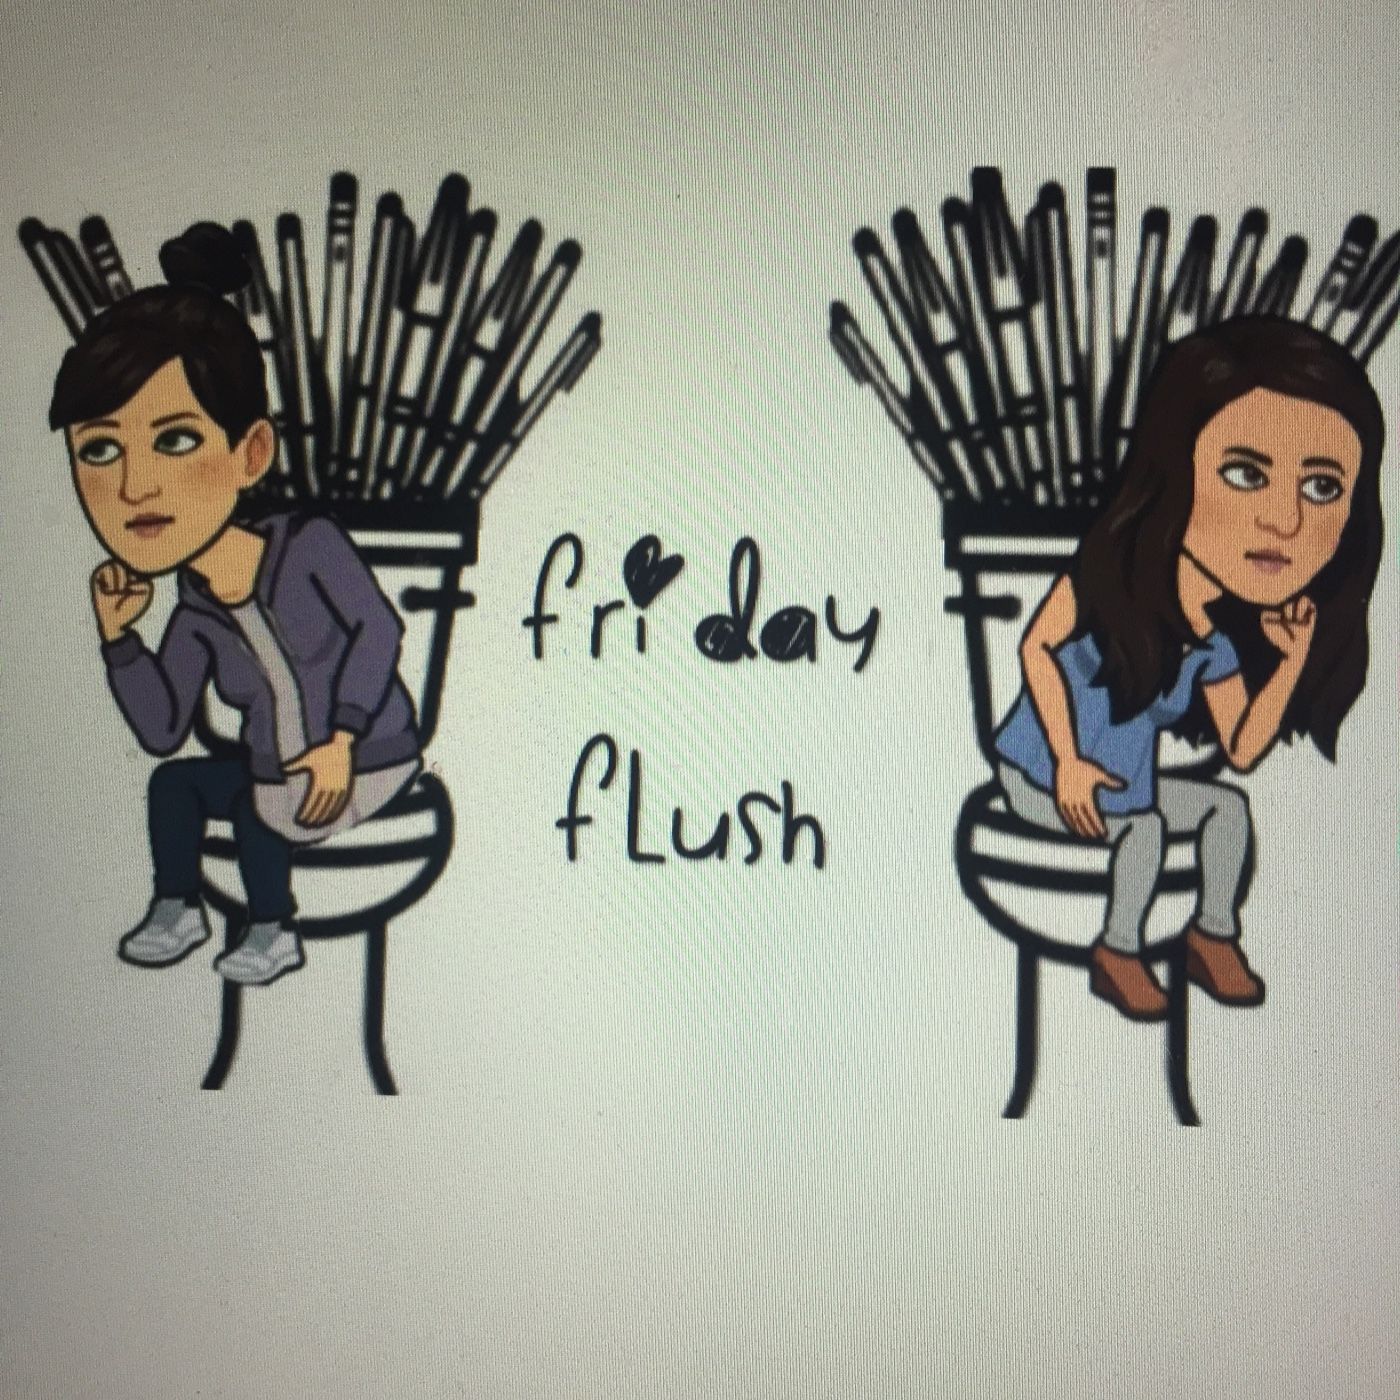 Friday Flush